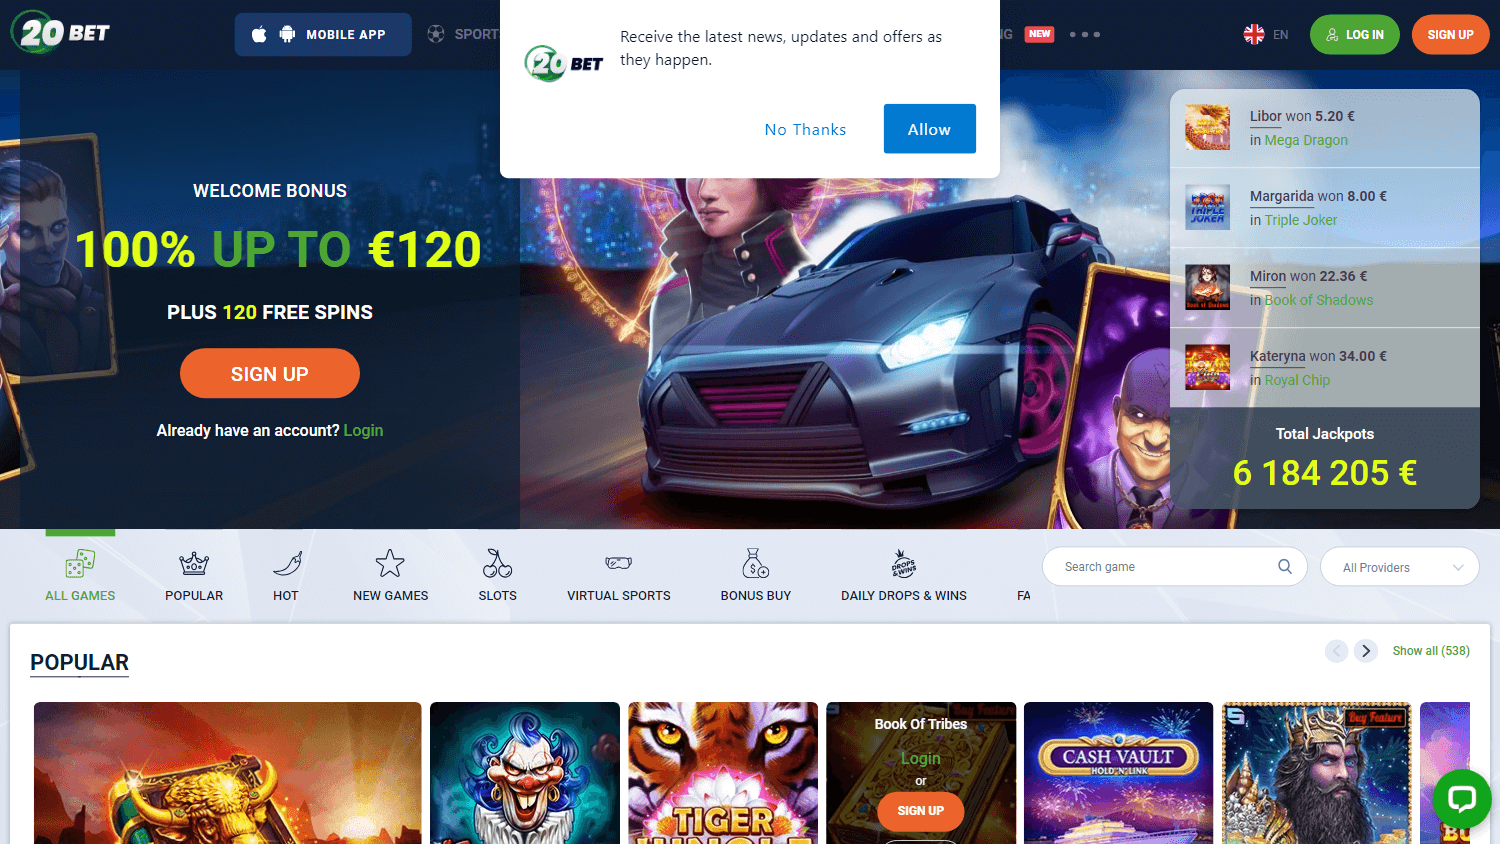 20bet_casino_homepage_desktop